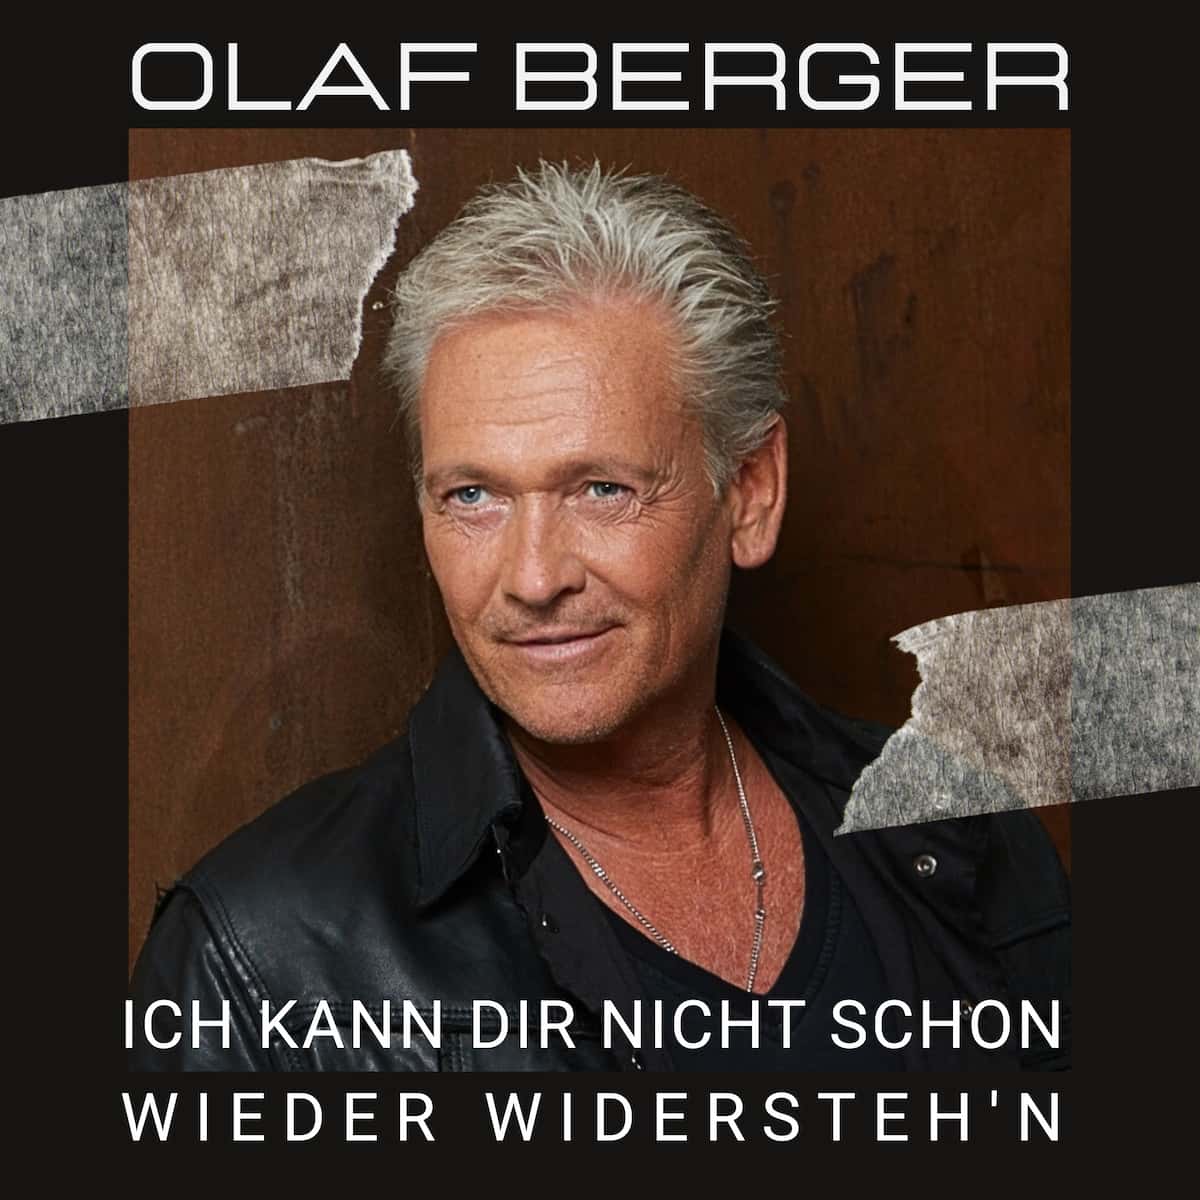 Olaf Berger - Neuer Schlager 2023 veröffentlicht - “Ich kann dir nicht schon wieder widersteh'n”